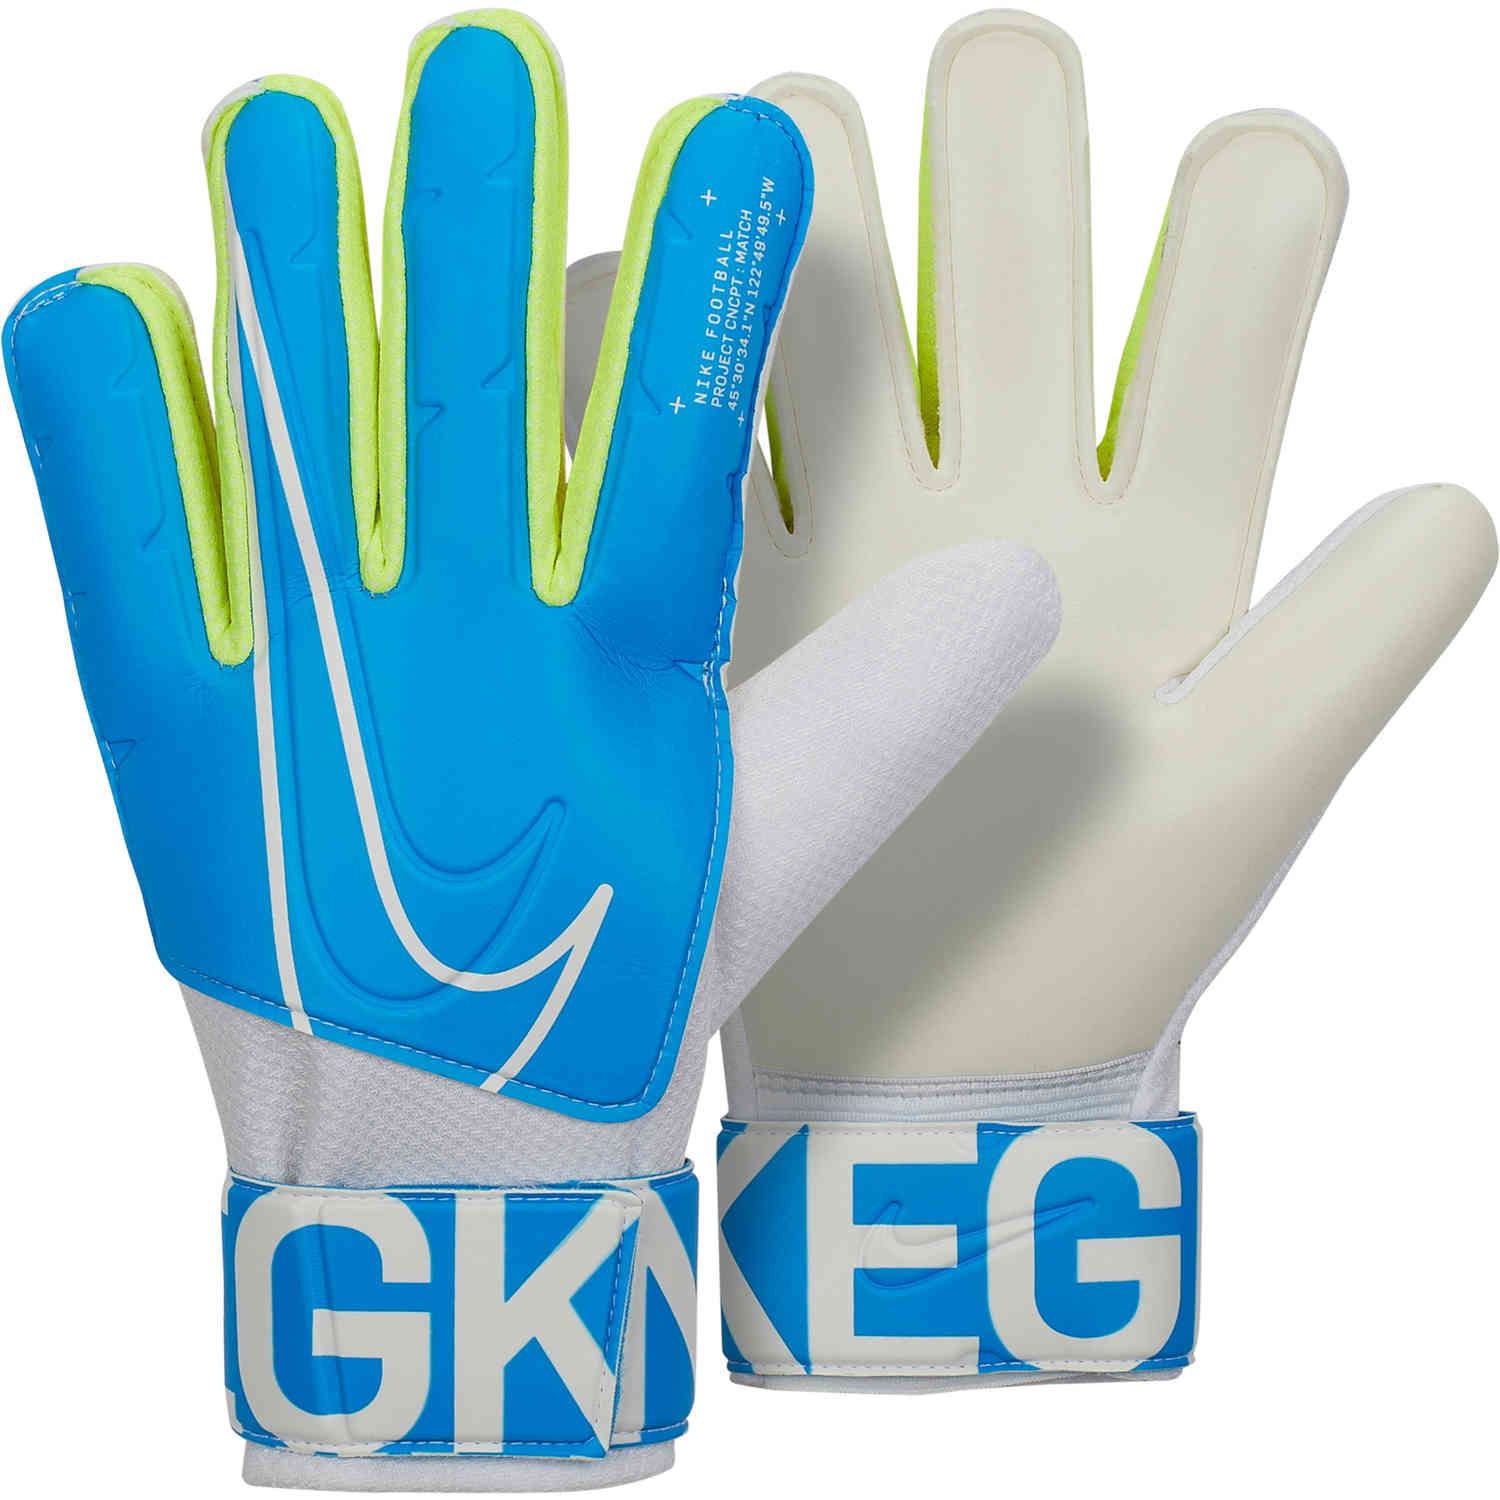 new nike gk gloves